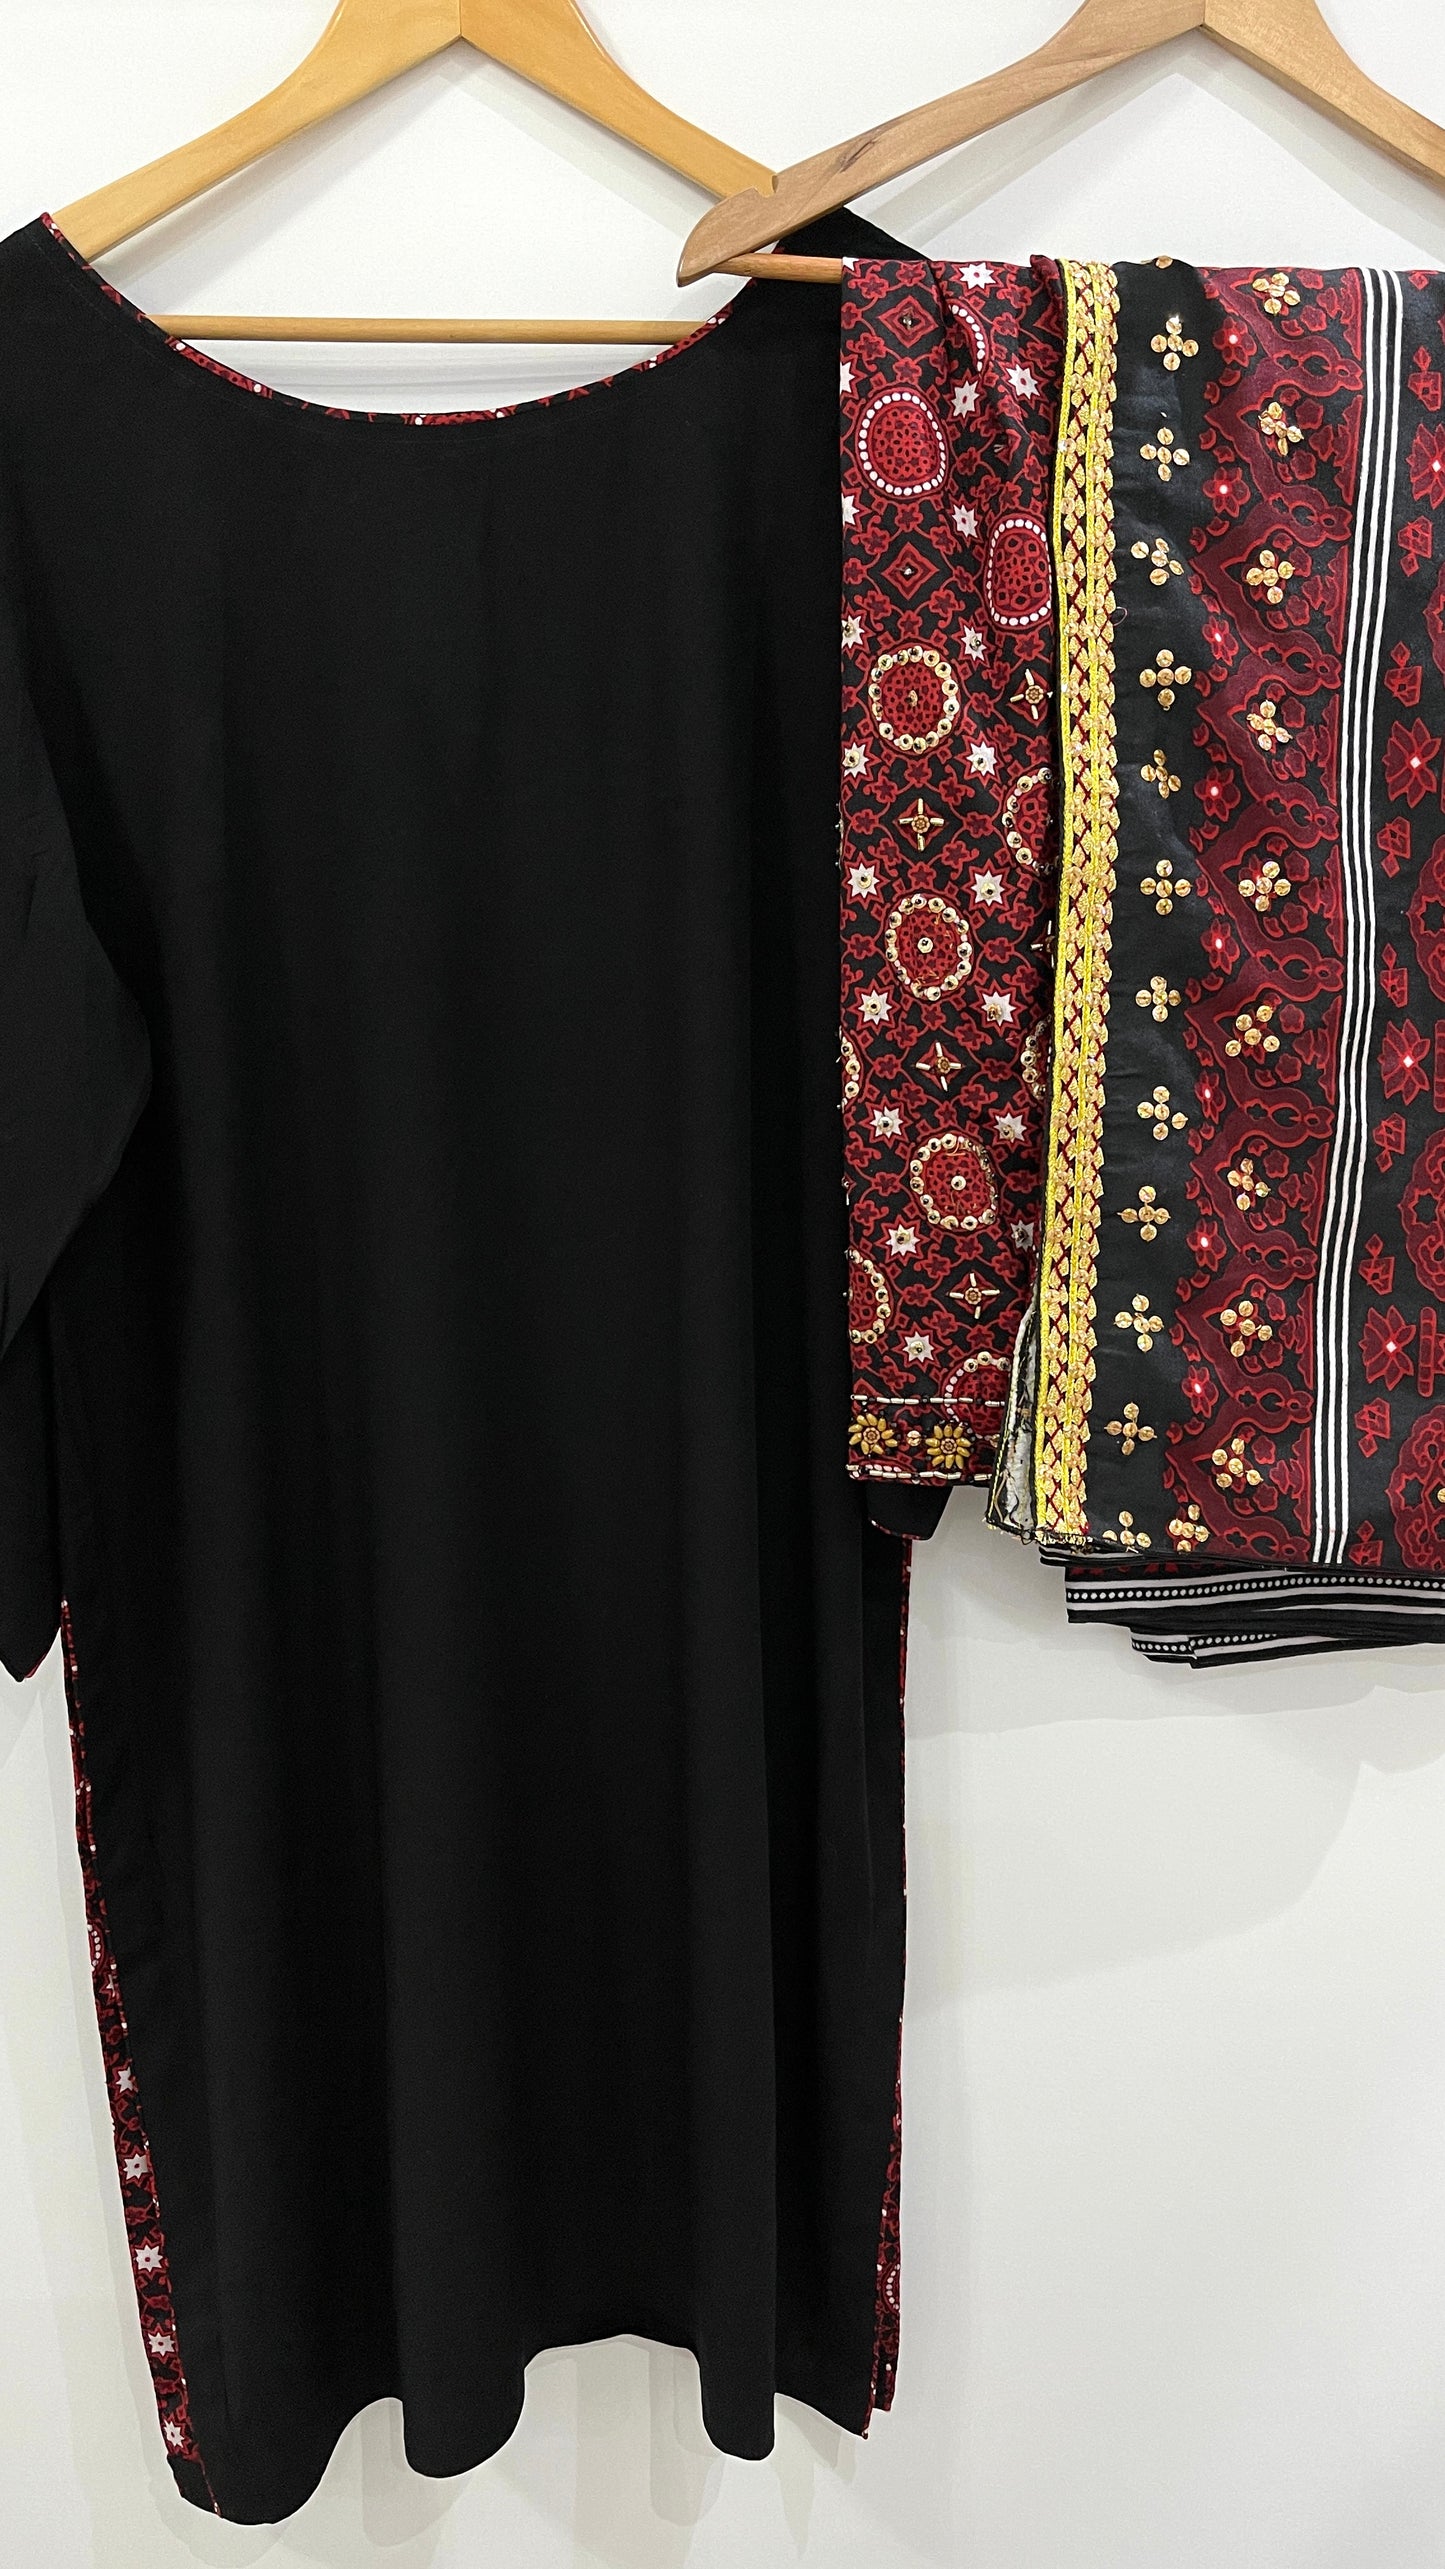 LAIBA - 3 Piece Linen Ajrak Suit with Bead and Sequin Details